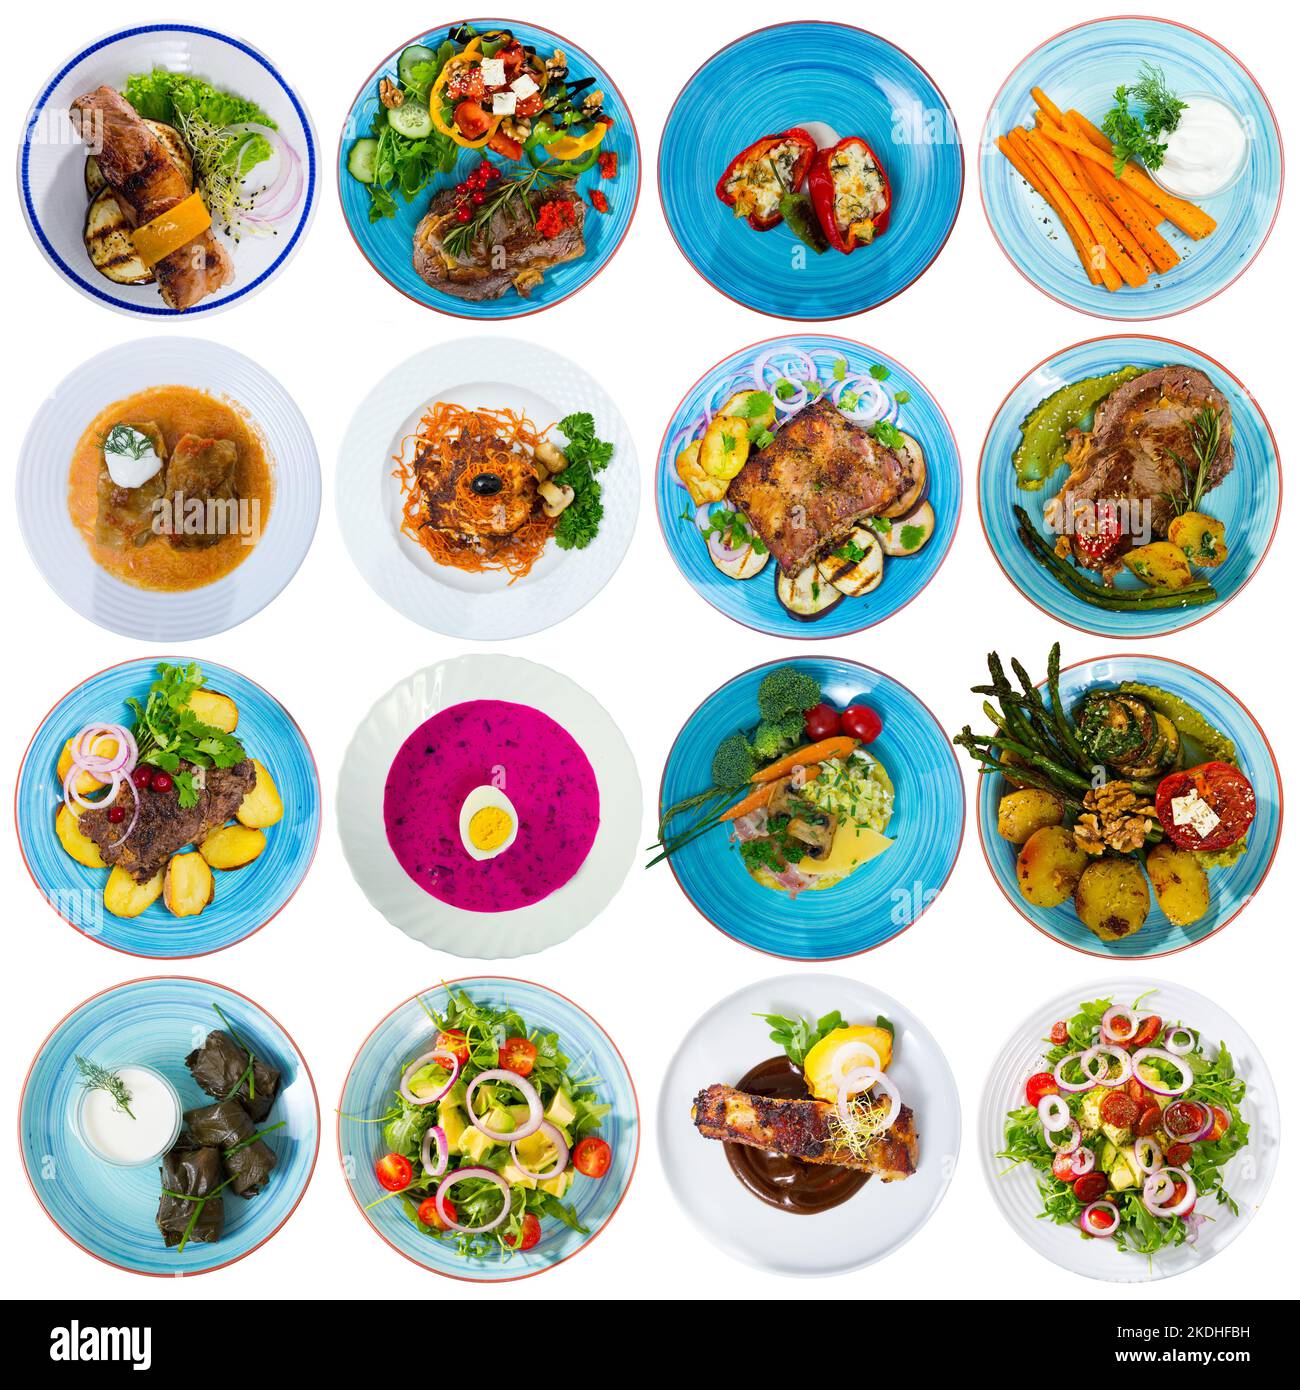 Collage de repas sur des assiettes rondes Banque D'Images